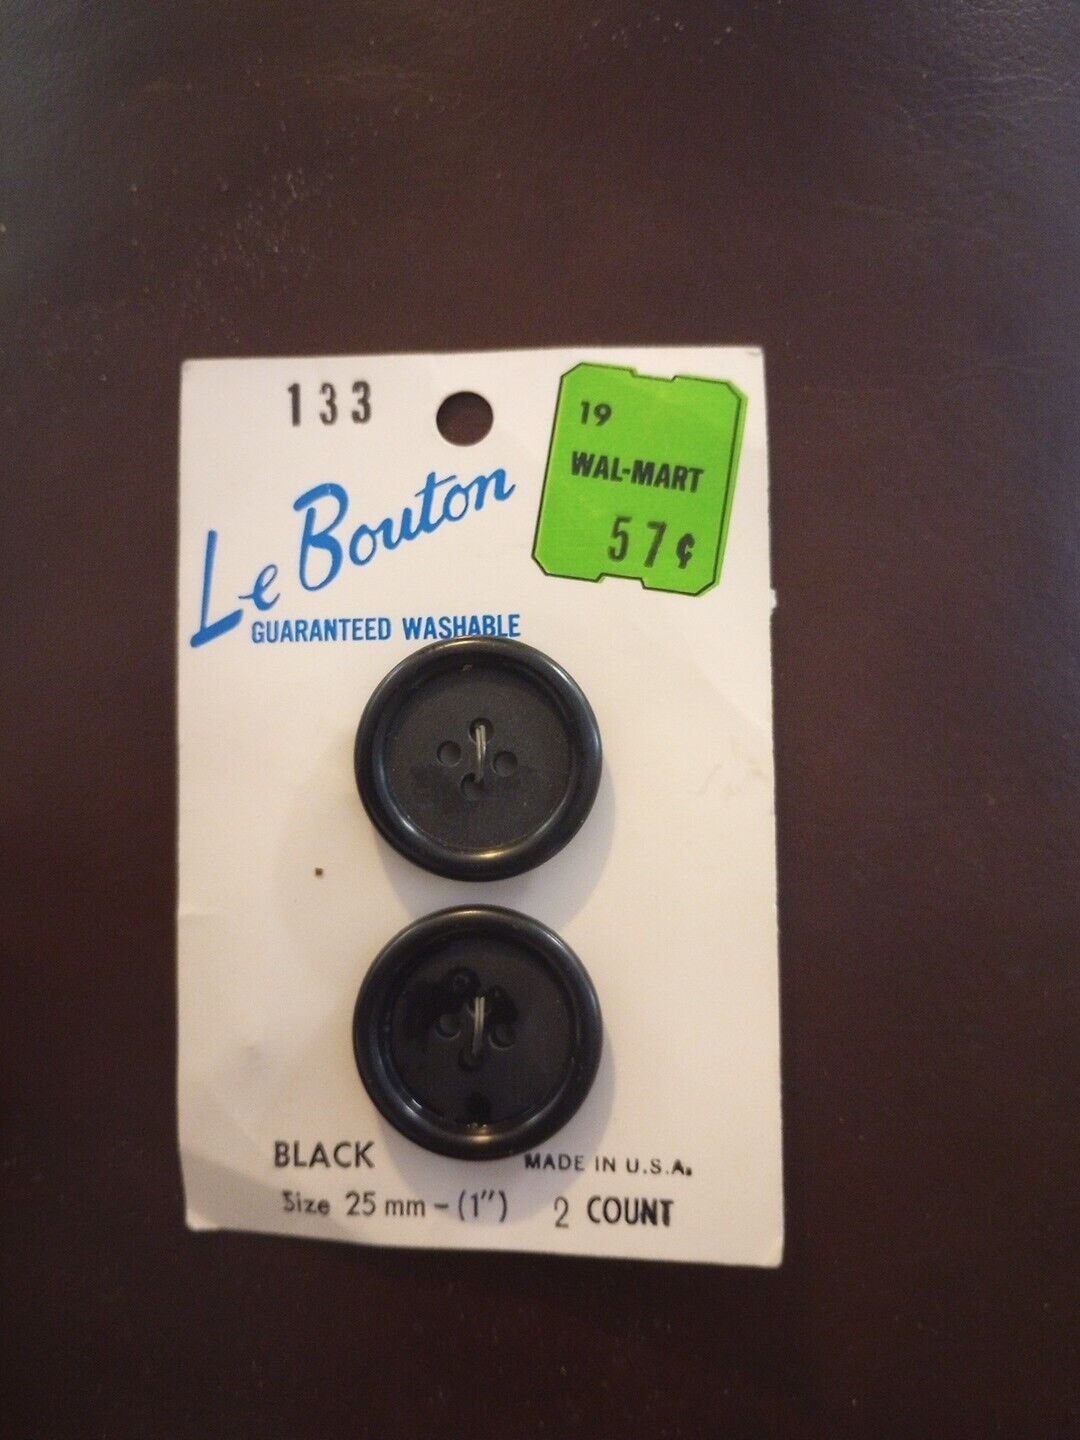 Le Boutton Black Vintage Button's Size 25mm